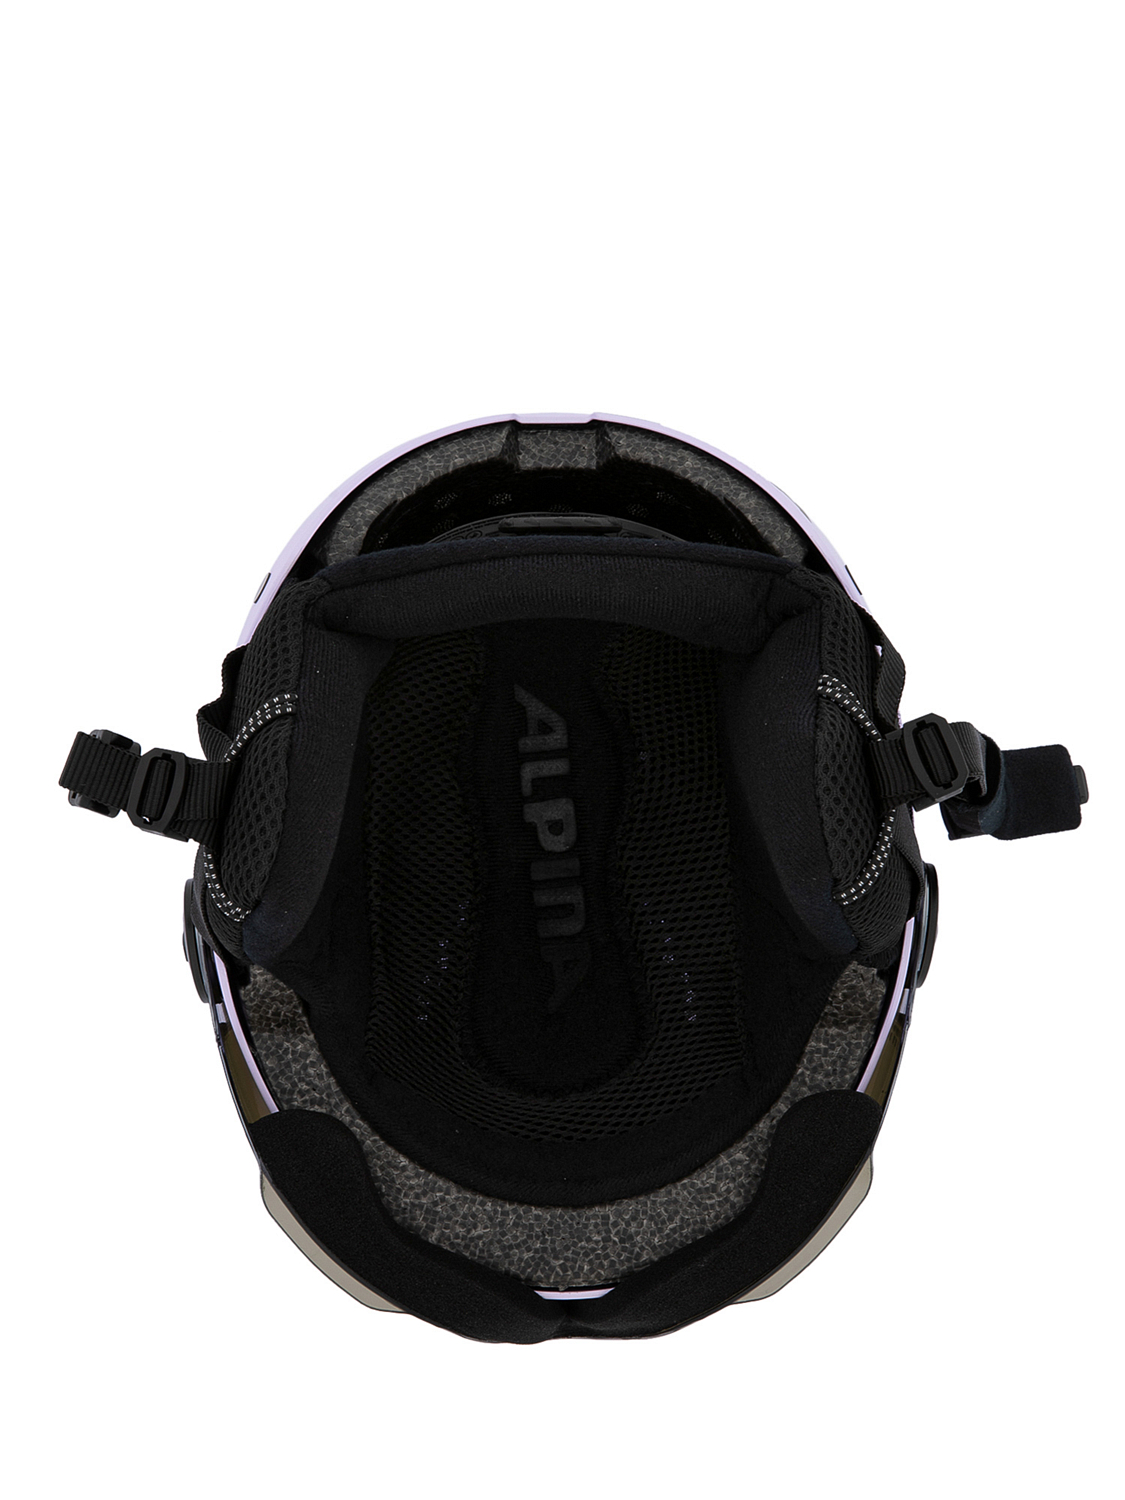 Шлем с визором ALPINA Arber Visor Q-Lite Lilac Matt